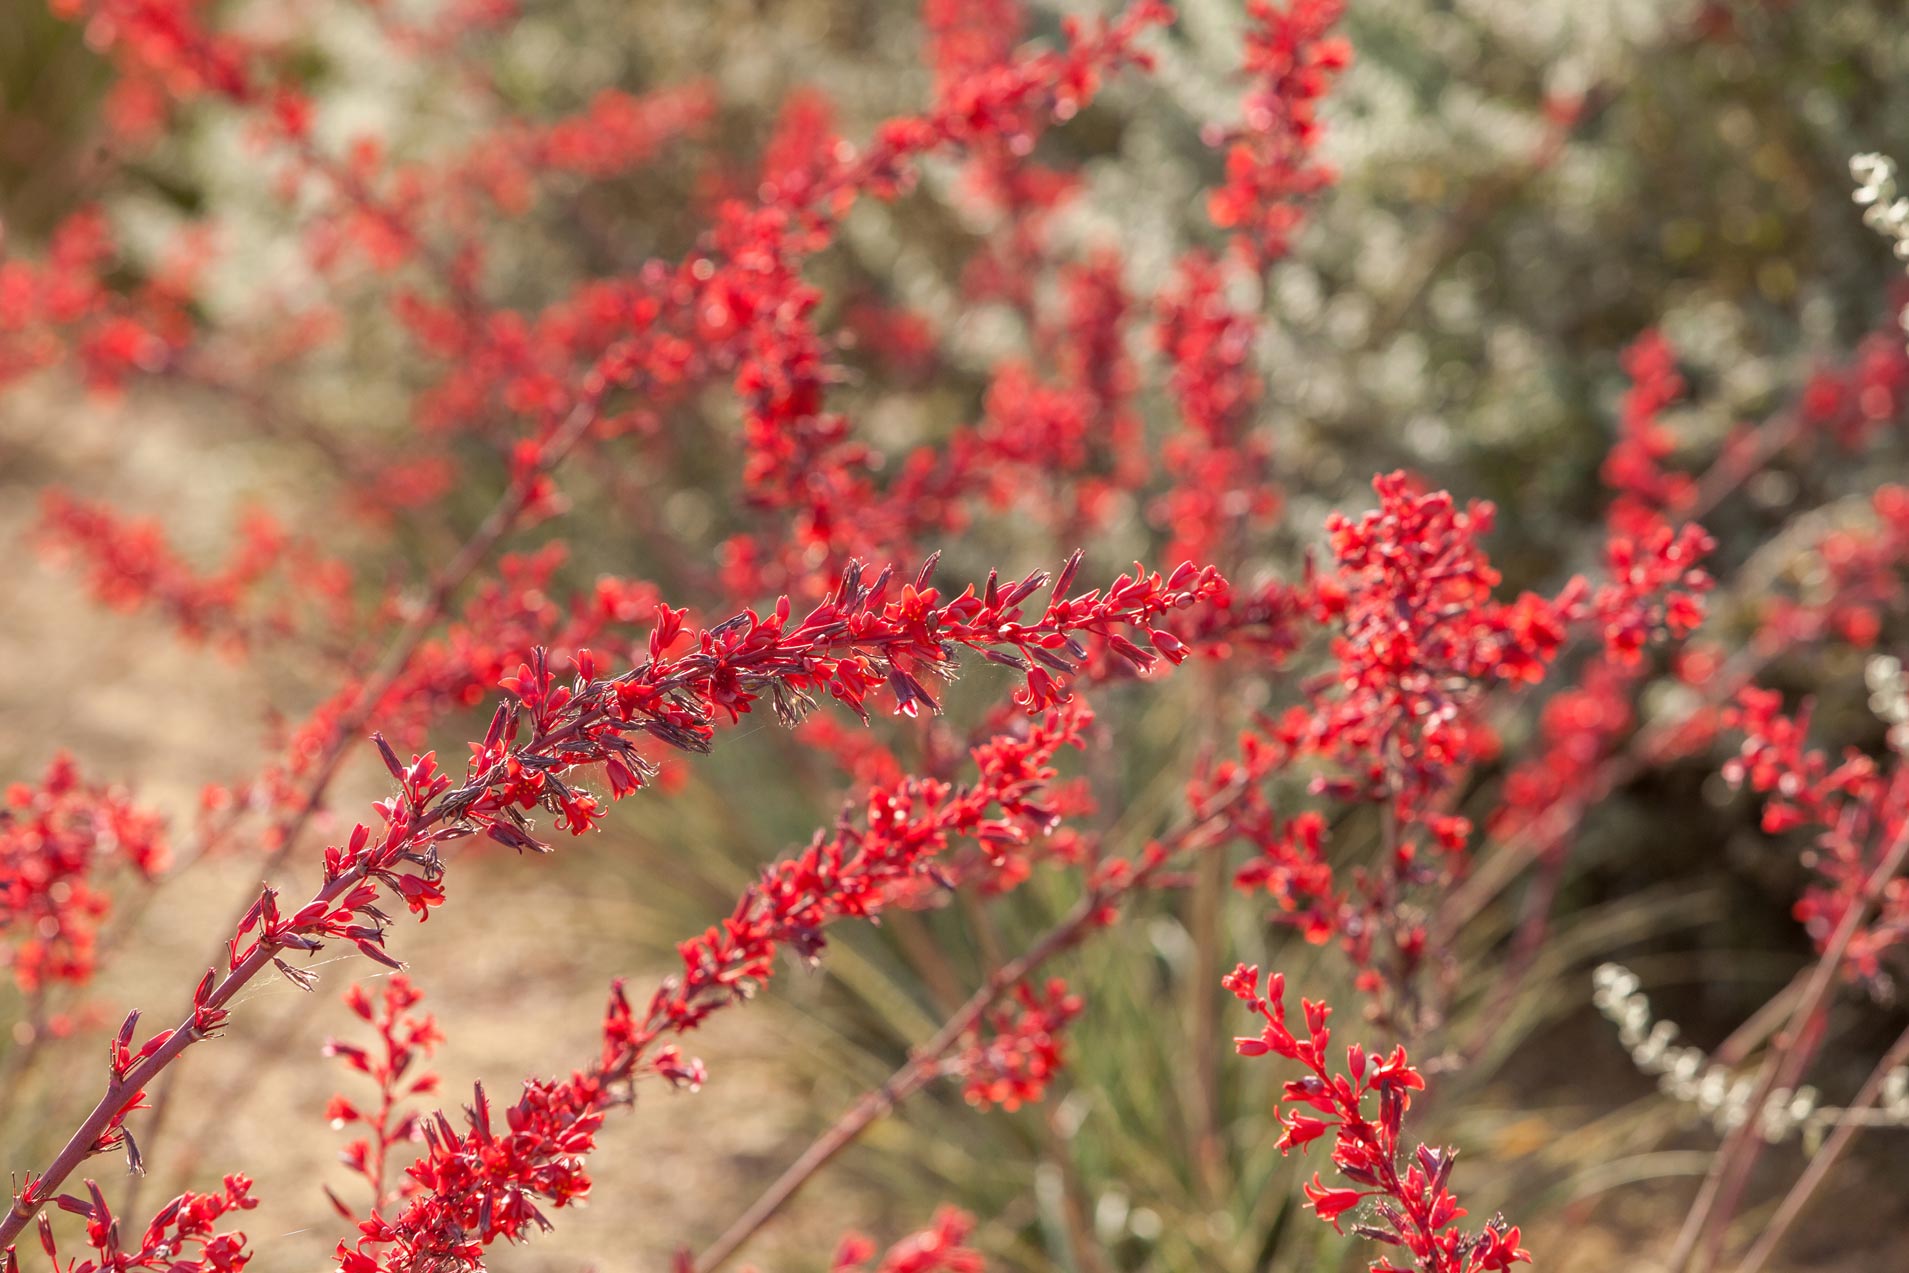 Multiple stalks of Brakelights Hesperaloe full of deep red blooms.